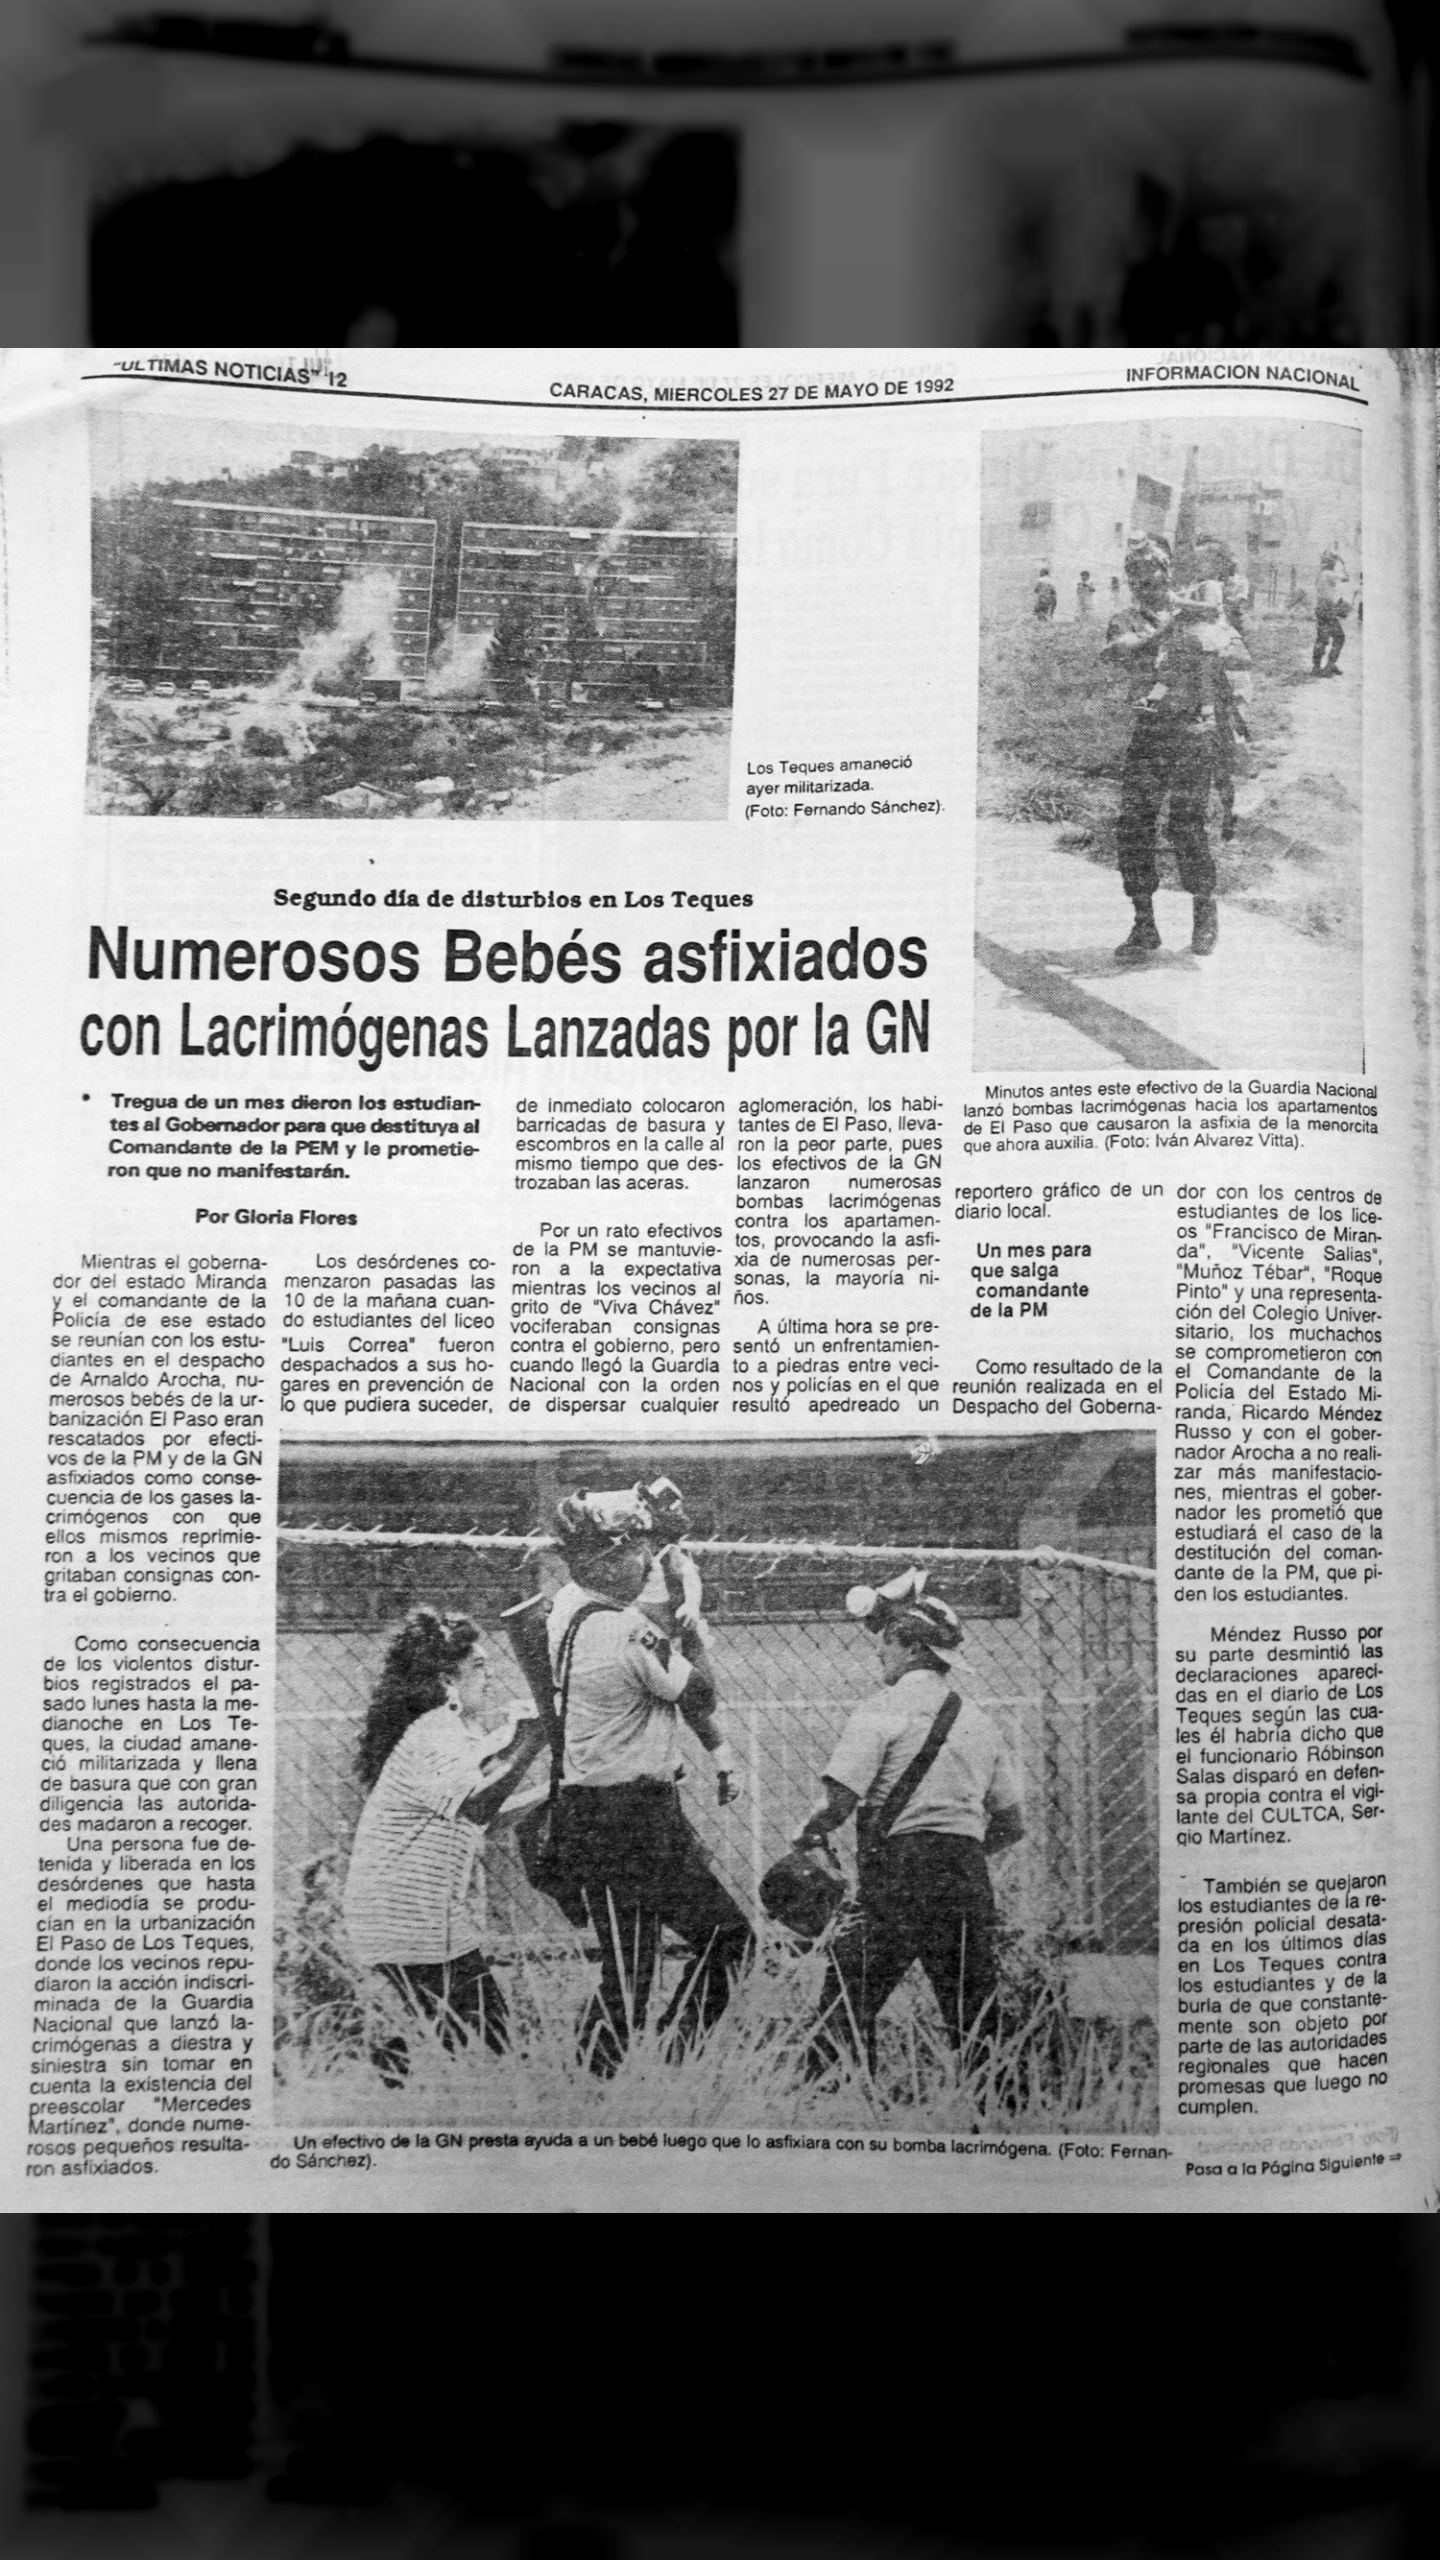 Numerosos bebés asfixiados con lacrimógenas lanzadas por la GN (Últimas Noticias, 27 de mayo de 1992)